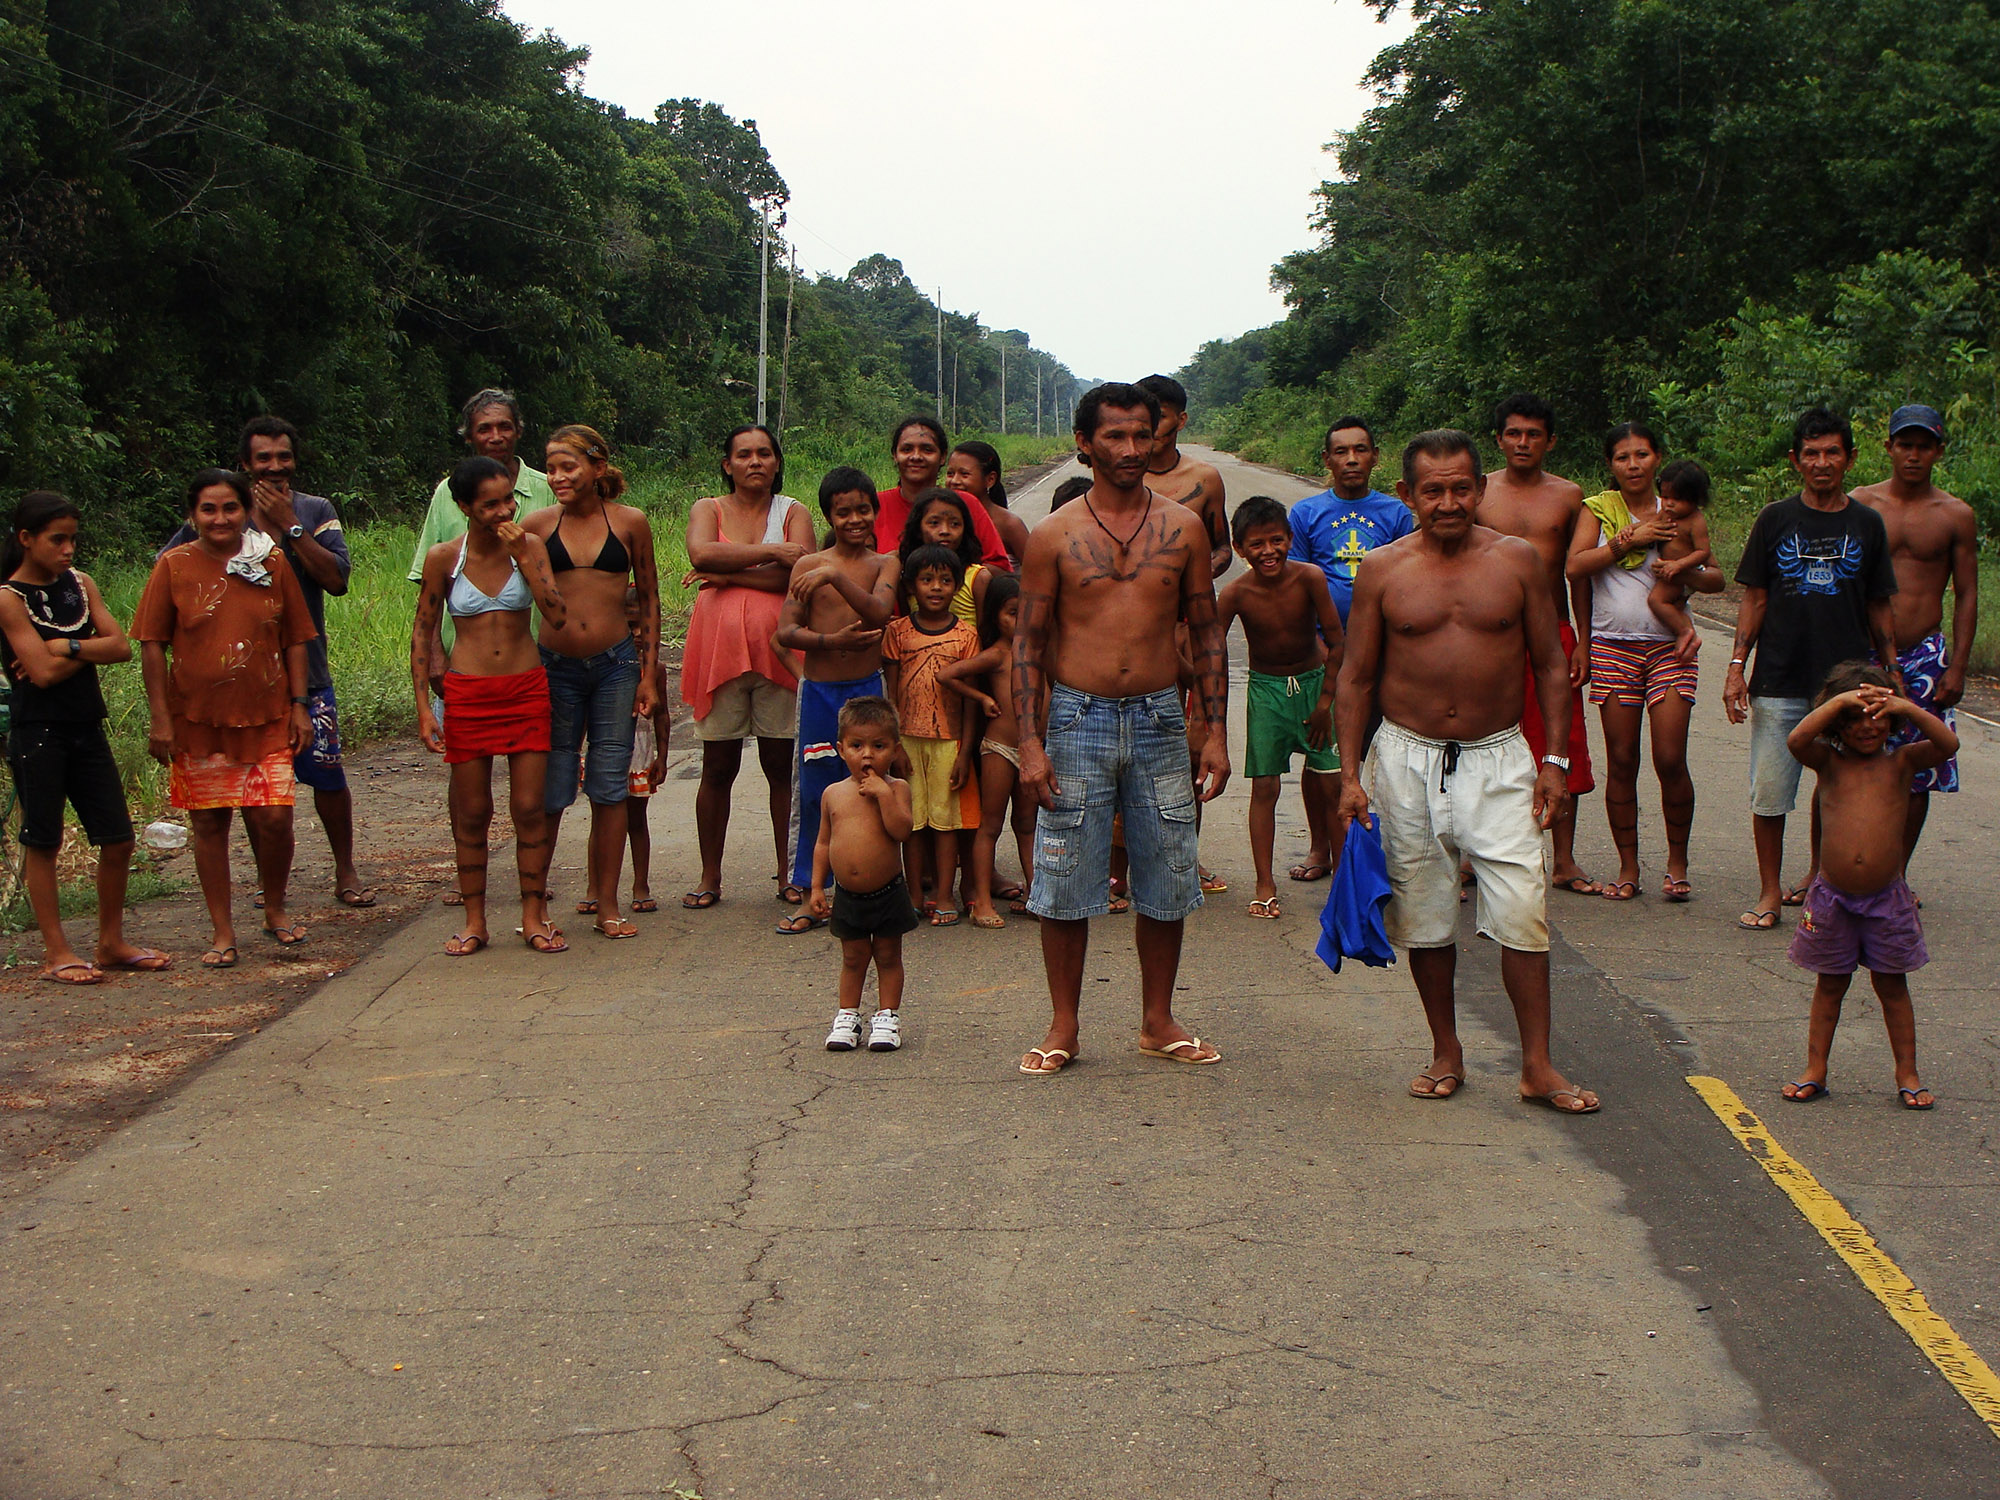 BR-319 ameaça povos indígenas 6:- A obrigação de consulta aos povos impactados